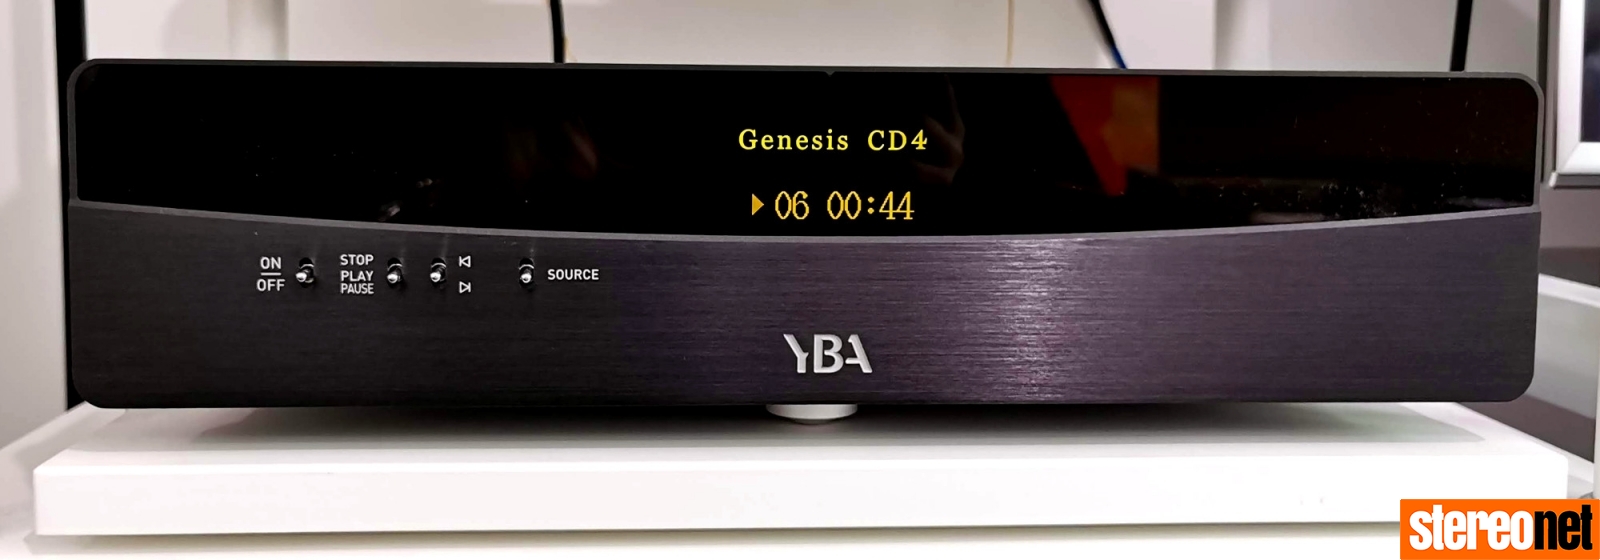 YBA Genesis CD4 CD Player Review